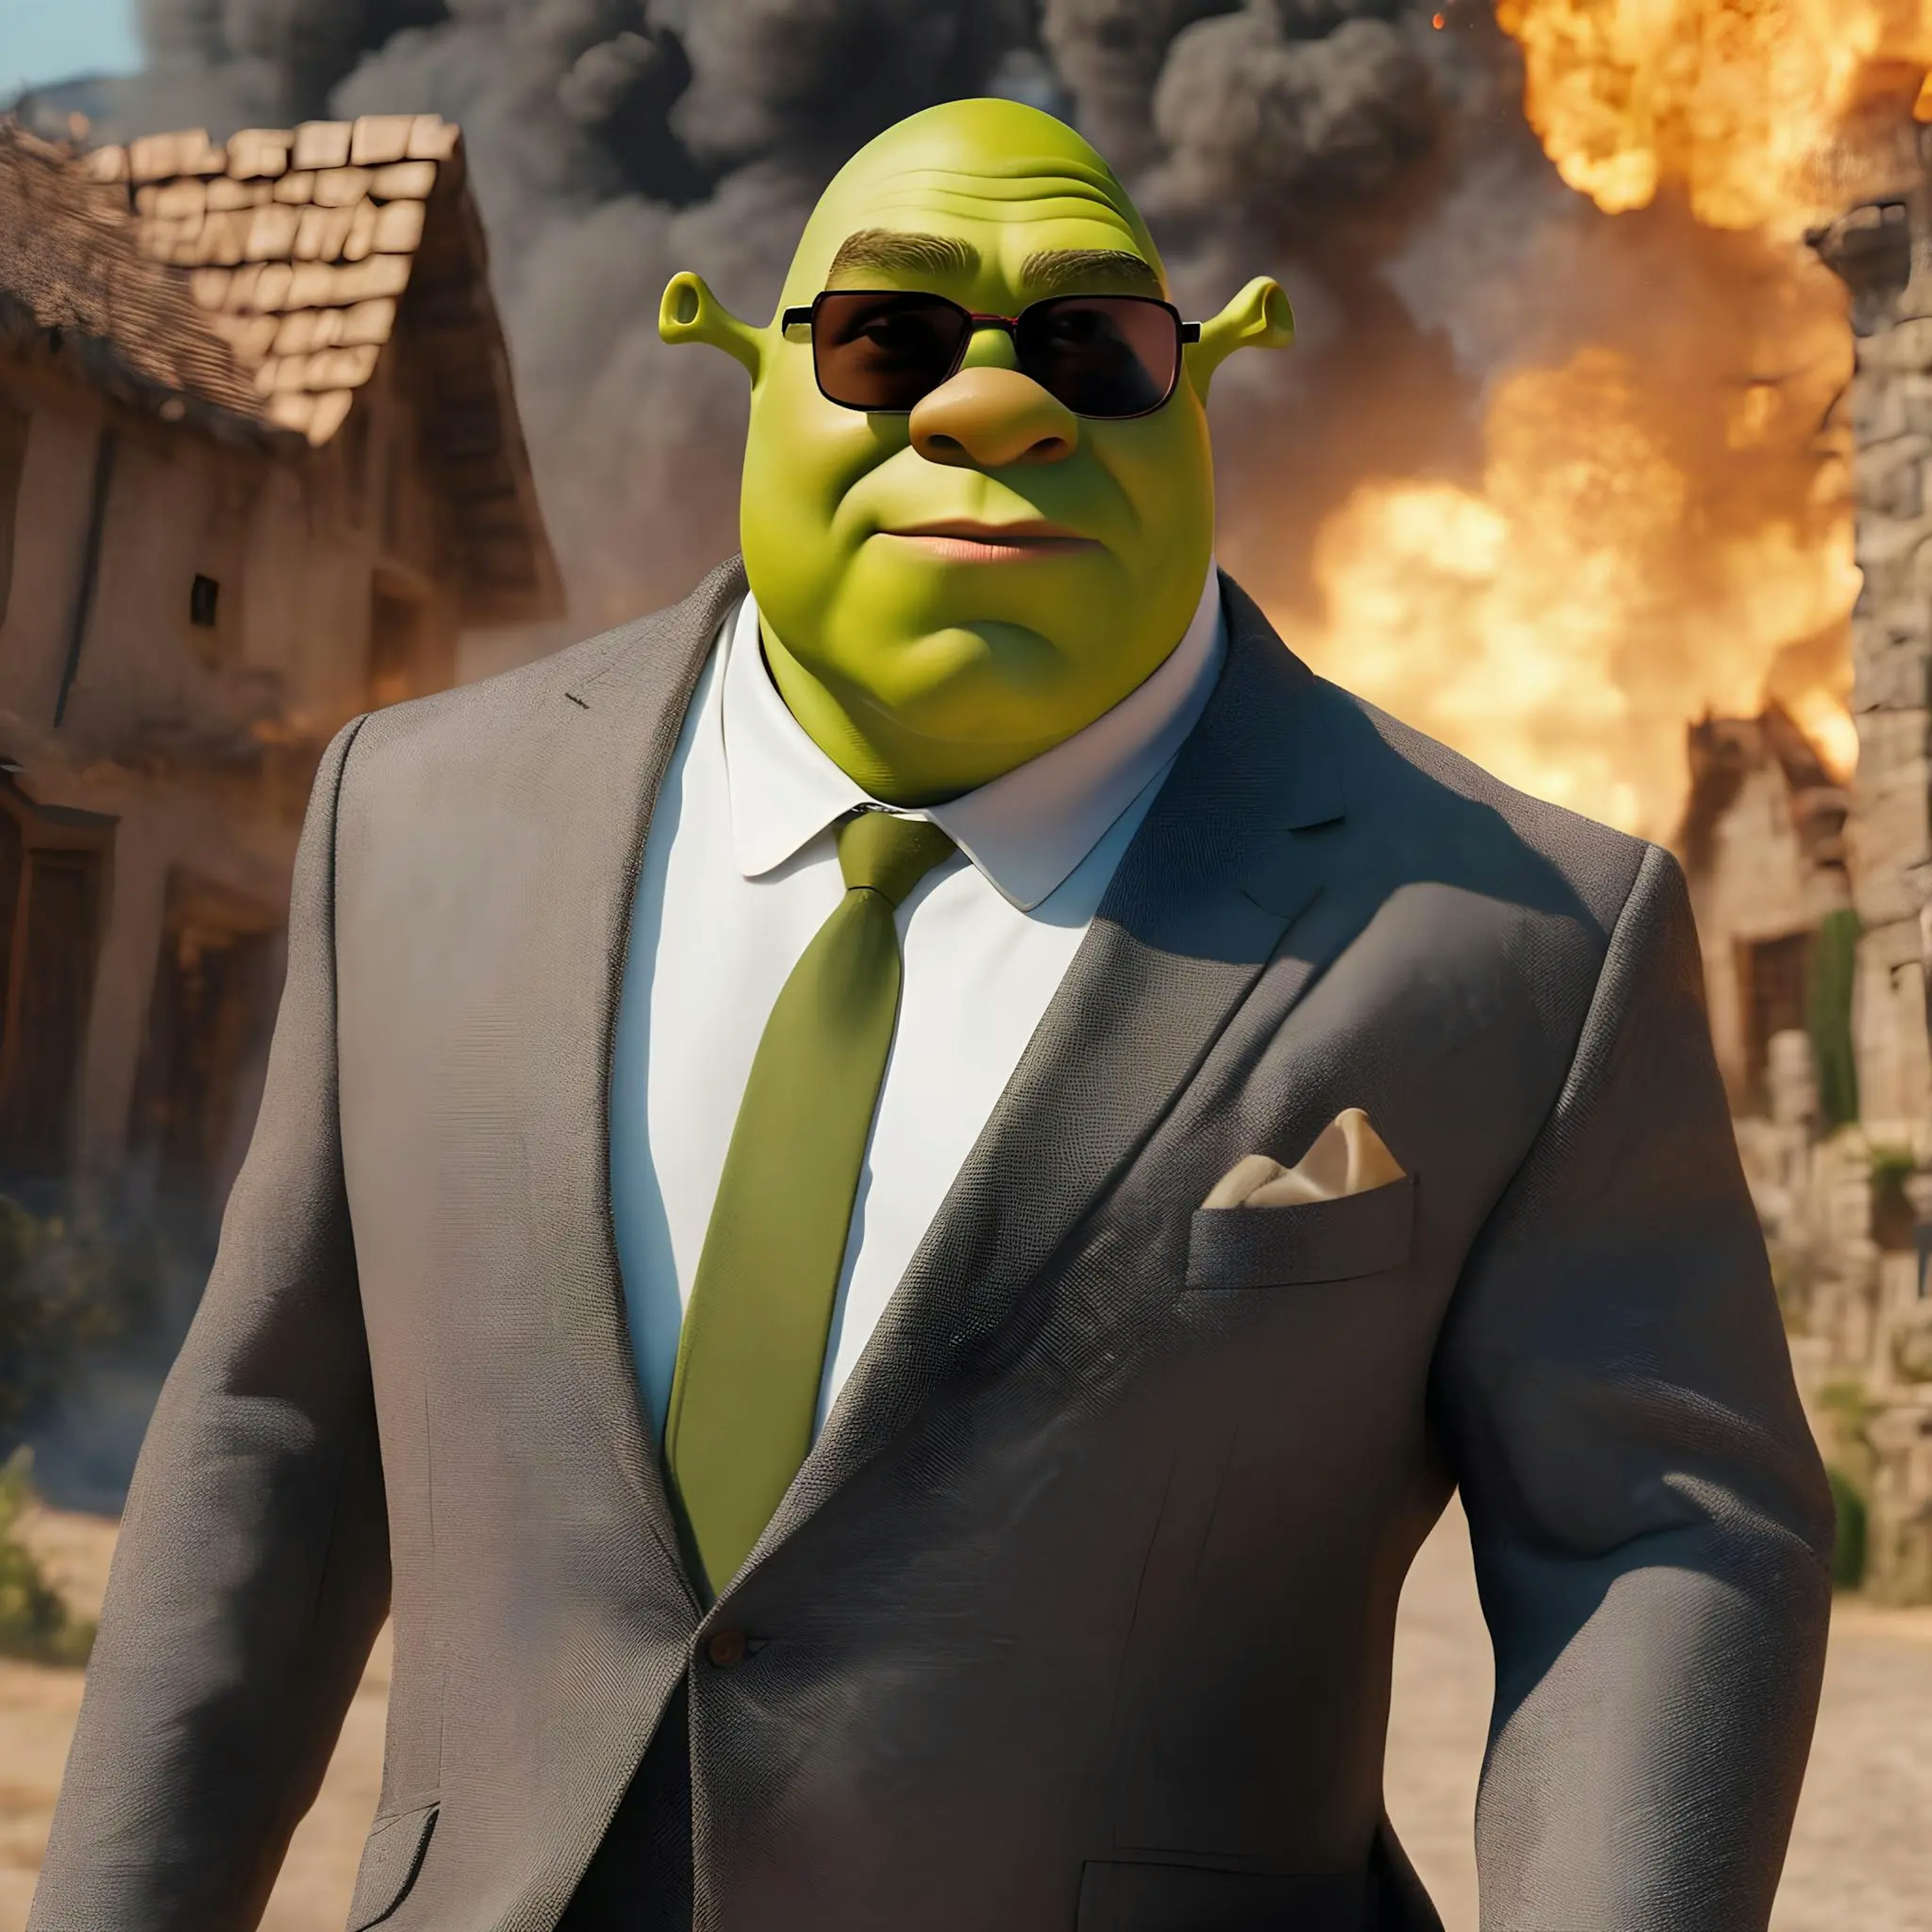 Naklejka/Wlepa Shrek Nie Patrzy Na Wybuchy